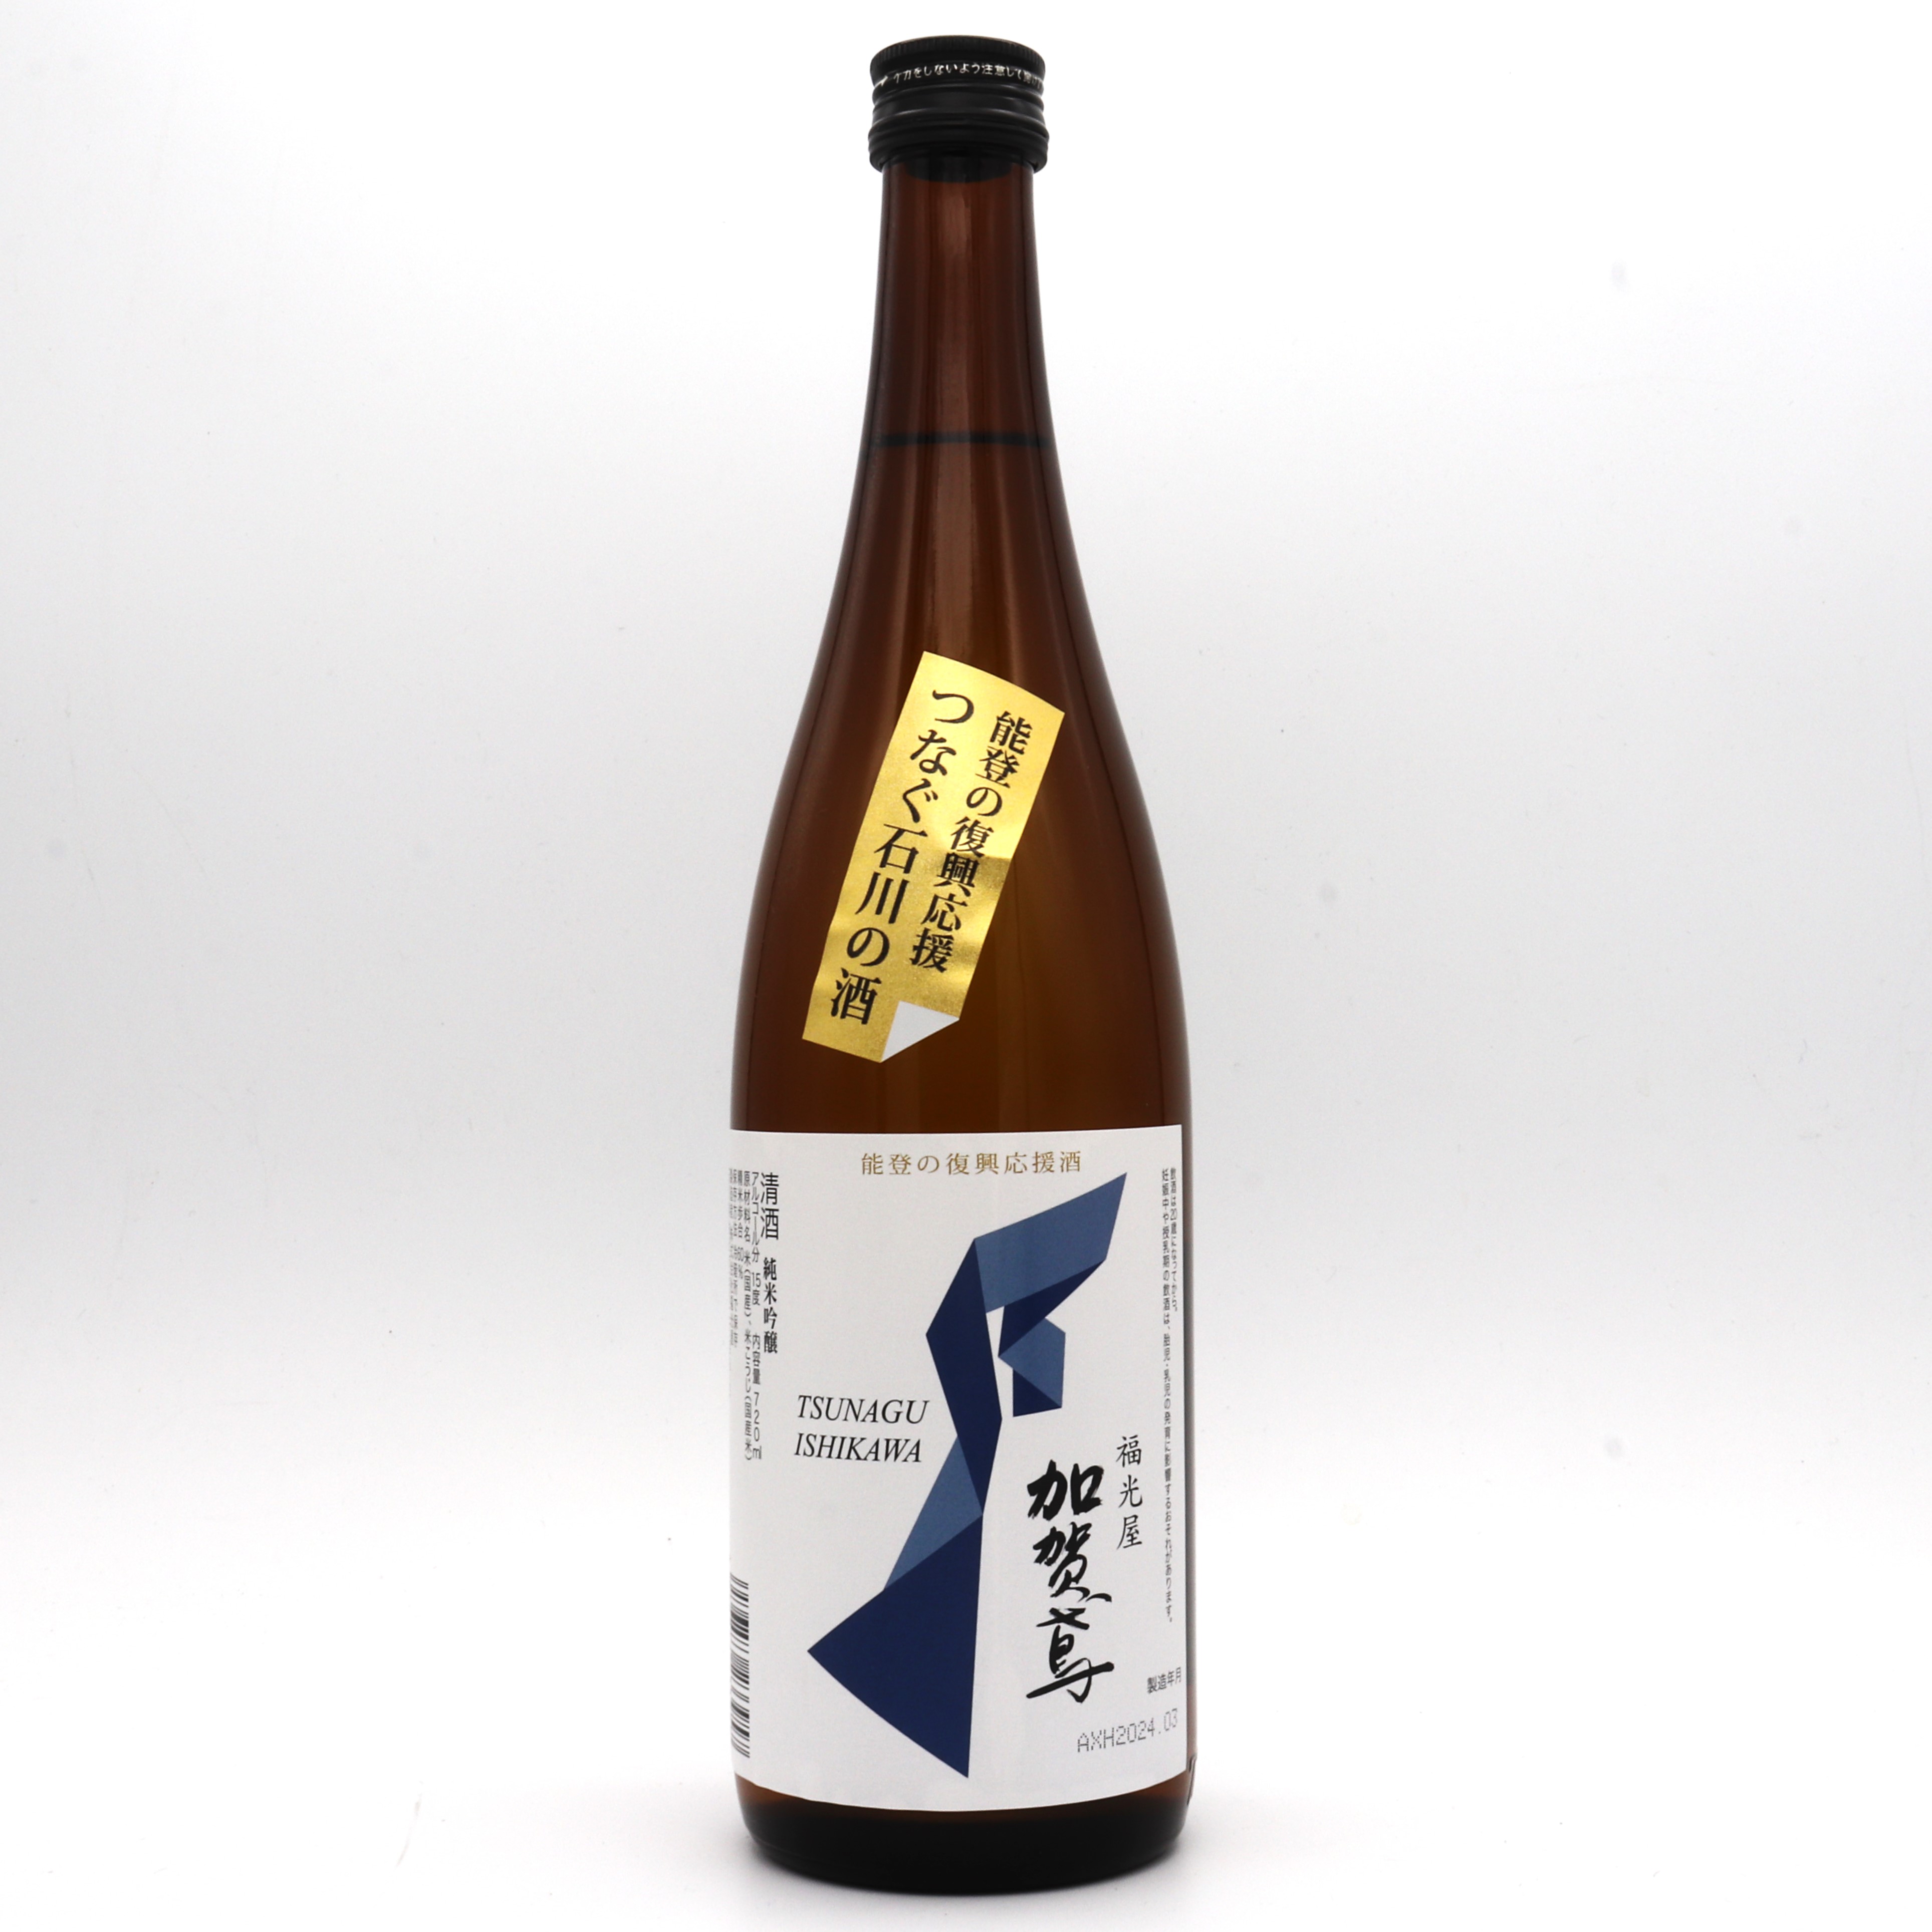 【ブログ更新】【加賀鳶】能登復興応援プロジェクト「つなぐ石川の酒」